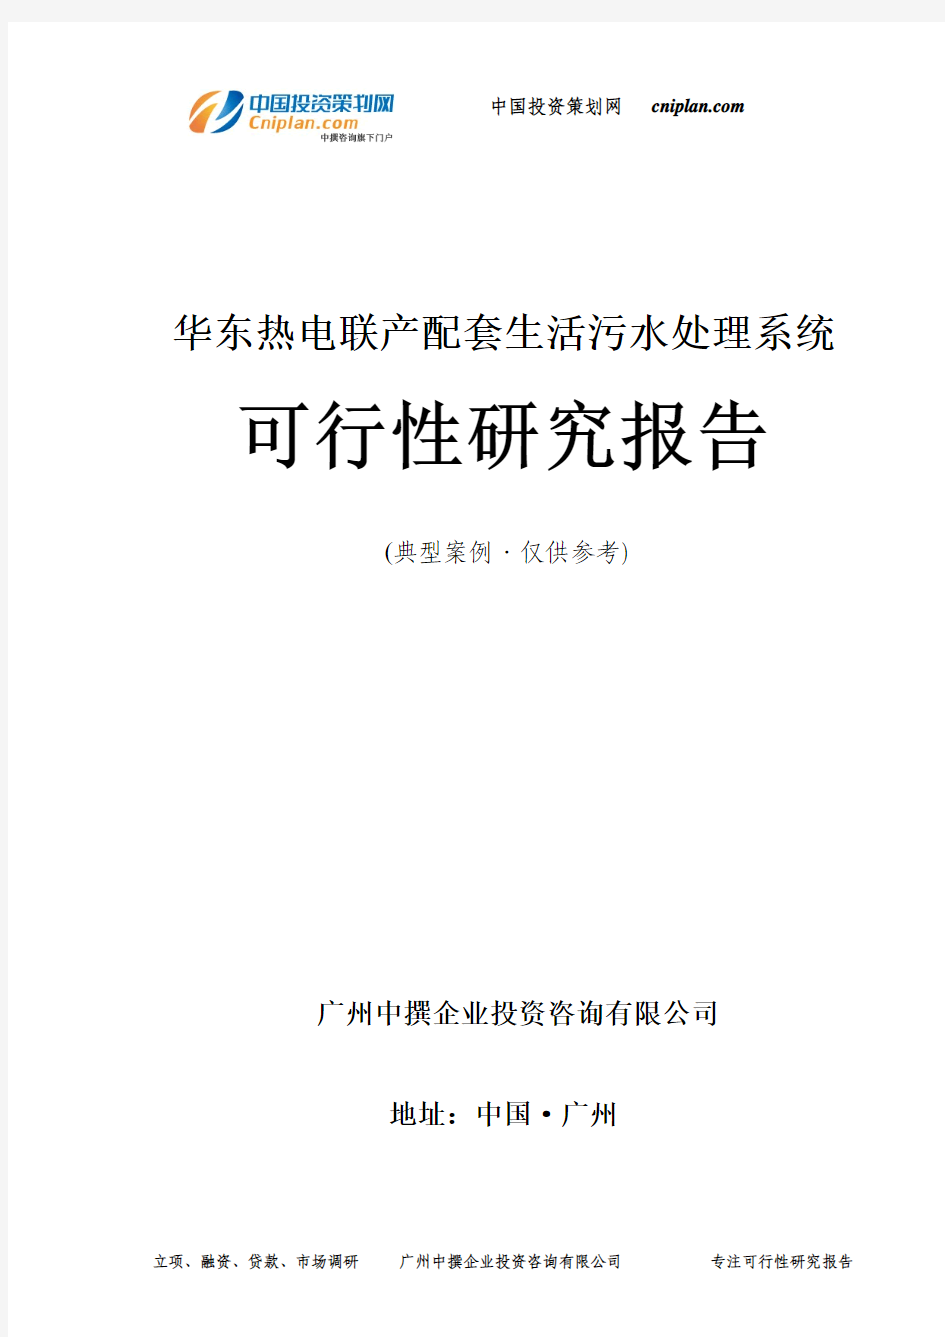 热电联产配套生活污水处理系统可行性研究报告-广州中撰咨询